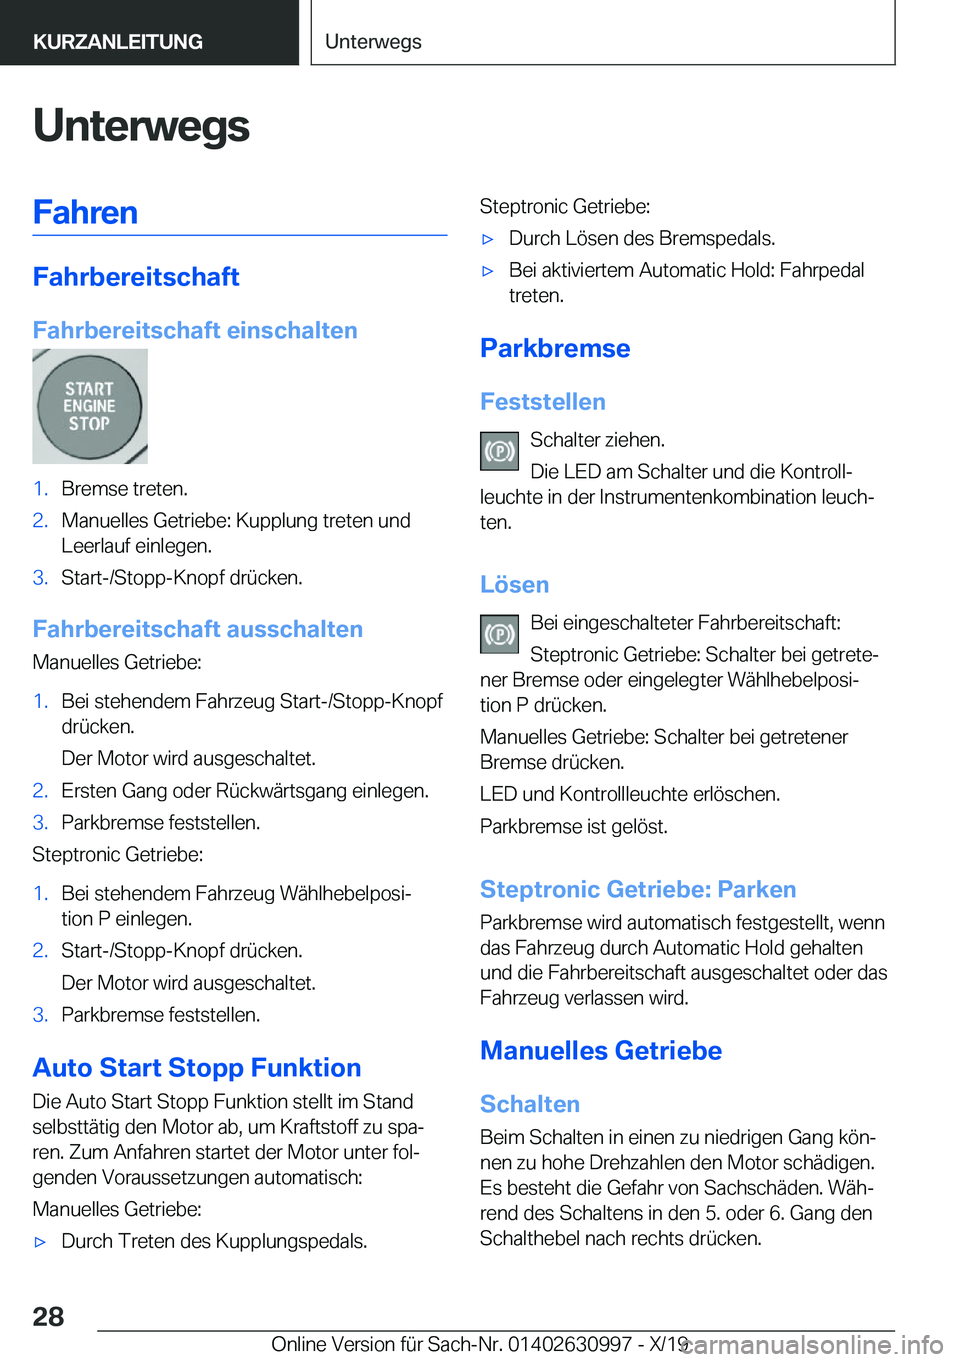 BMW 2 SERIES GRAN COUPE 2020  Betriebsanleitungen (in German) �U�n�t�e�r�w�e�g�s�F�a�h�r�e�n
�F�a�h�r�b�e�r�e�i�t�s�c�h�a�f�t
�F�a�h�r�b�e�r�e�i�t�s�c�h�a�f�t��e�i�n�s�c�h�a�l�t�e�n
�1�.�B�r�e�m�s�e��t�r�e�t�e�n�.�2�.�M�a�n�u�e�l�l�e�s��G�e�t�r�i�e�b�e�:��K�